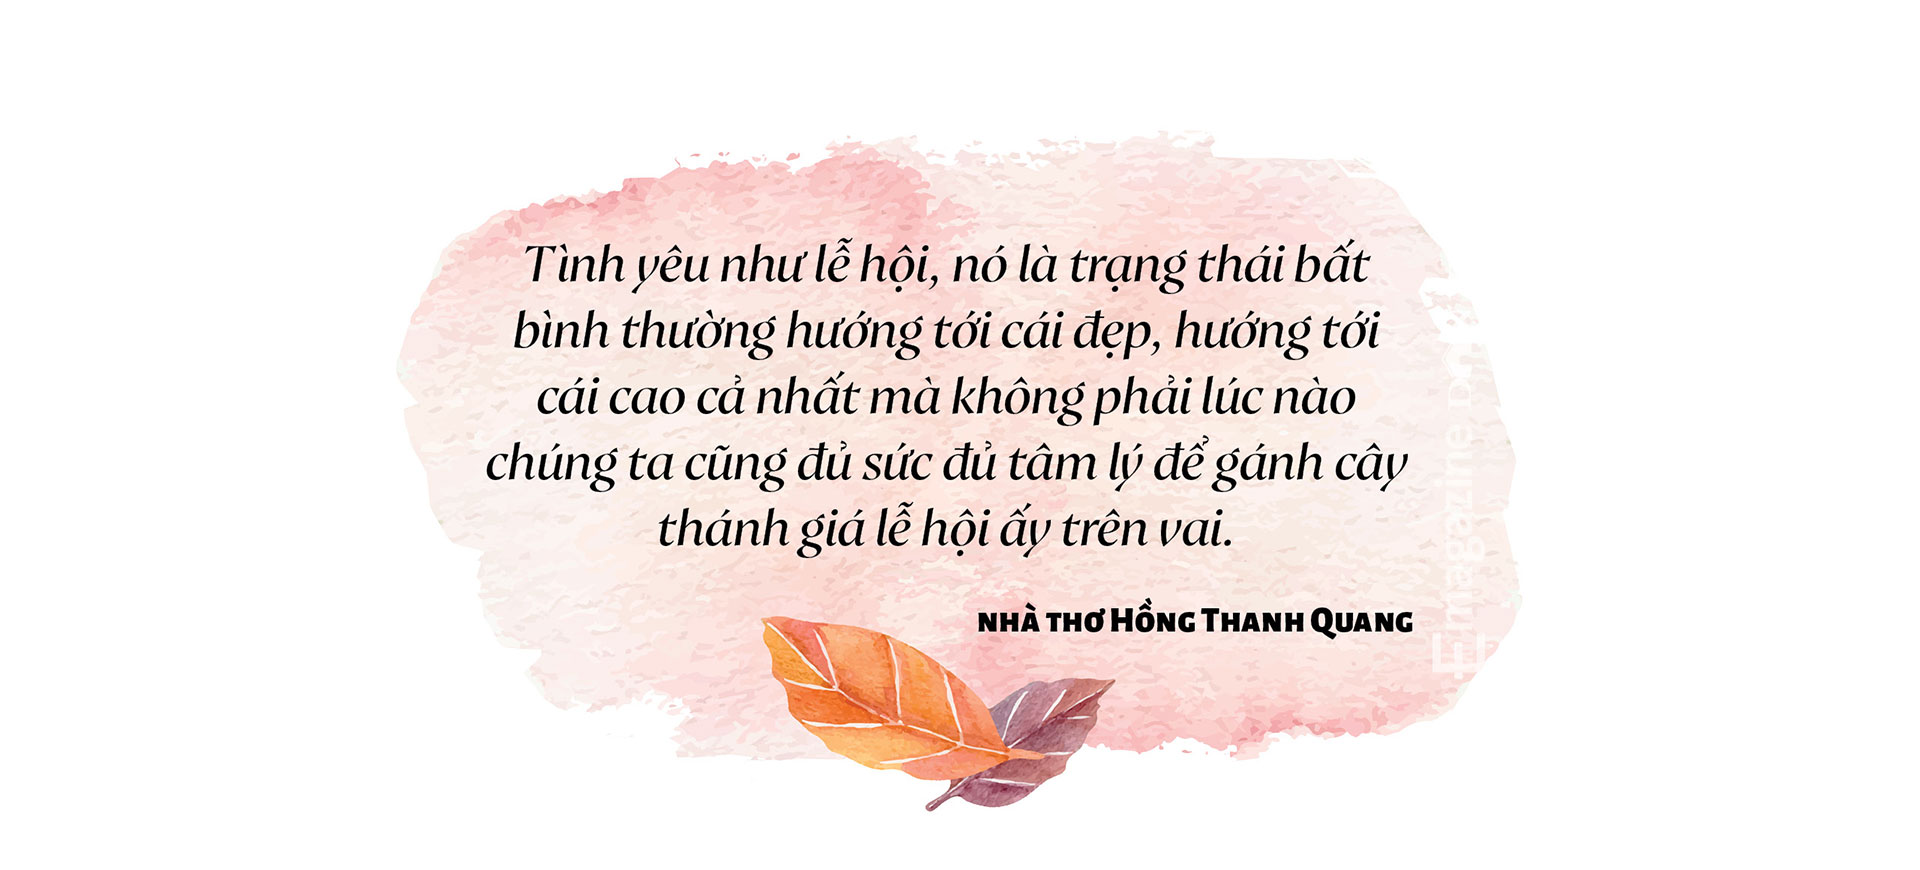 Trò chuyện giữa nhà báo Lưu Quang Định và nhà thơ,  nhà báo Hồng Thanh Quang: Về Thơ, Tình yêu và Cuộc đời - Ảnh 7.